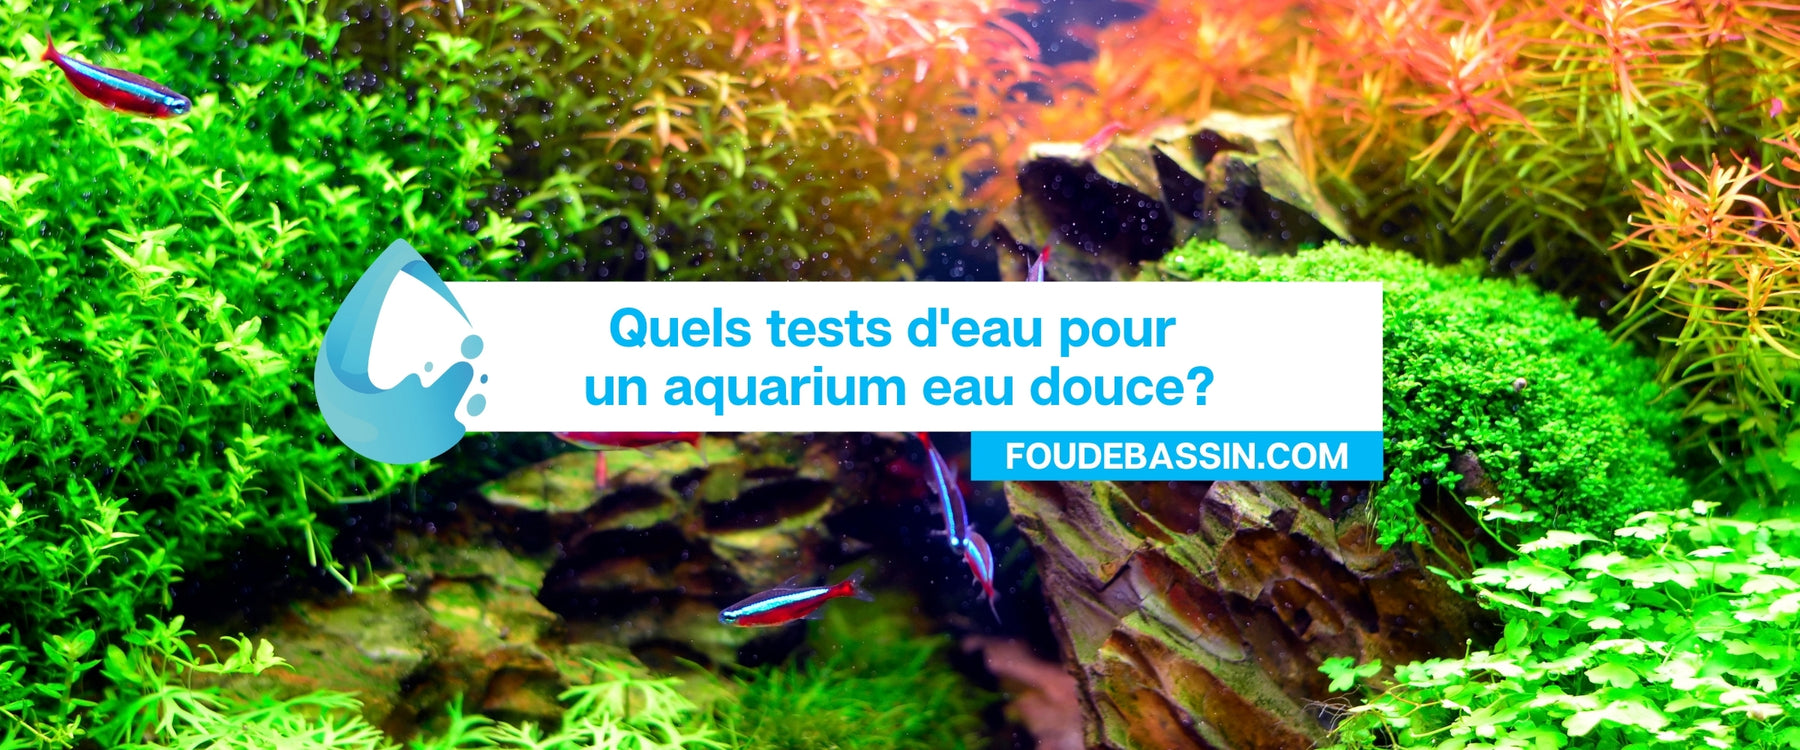 Quels tests d'eau pour un aquarium eau douce?